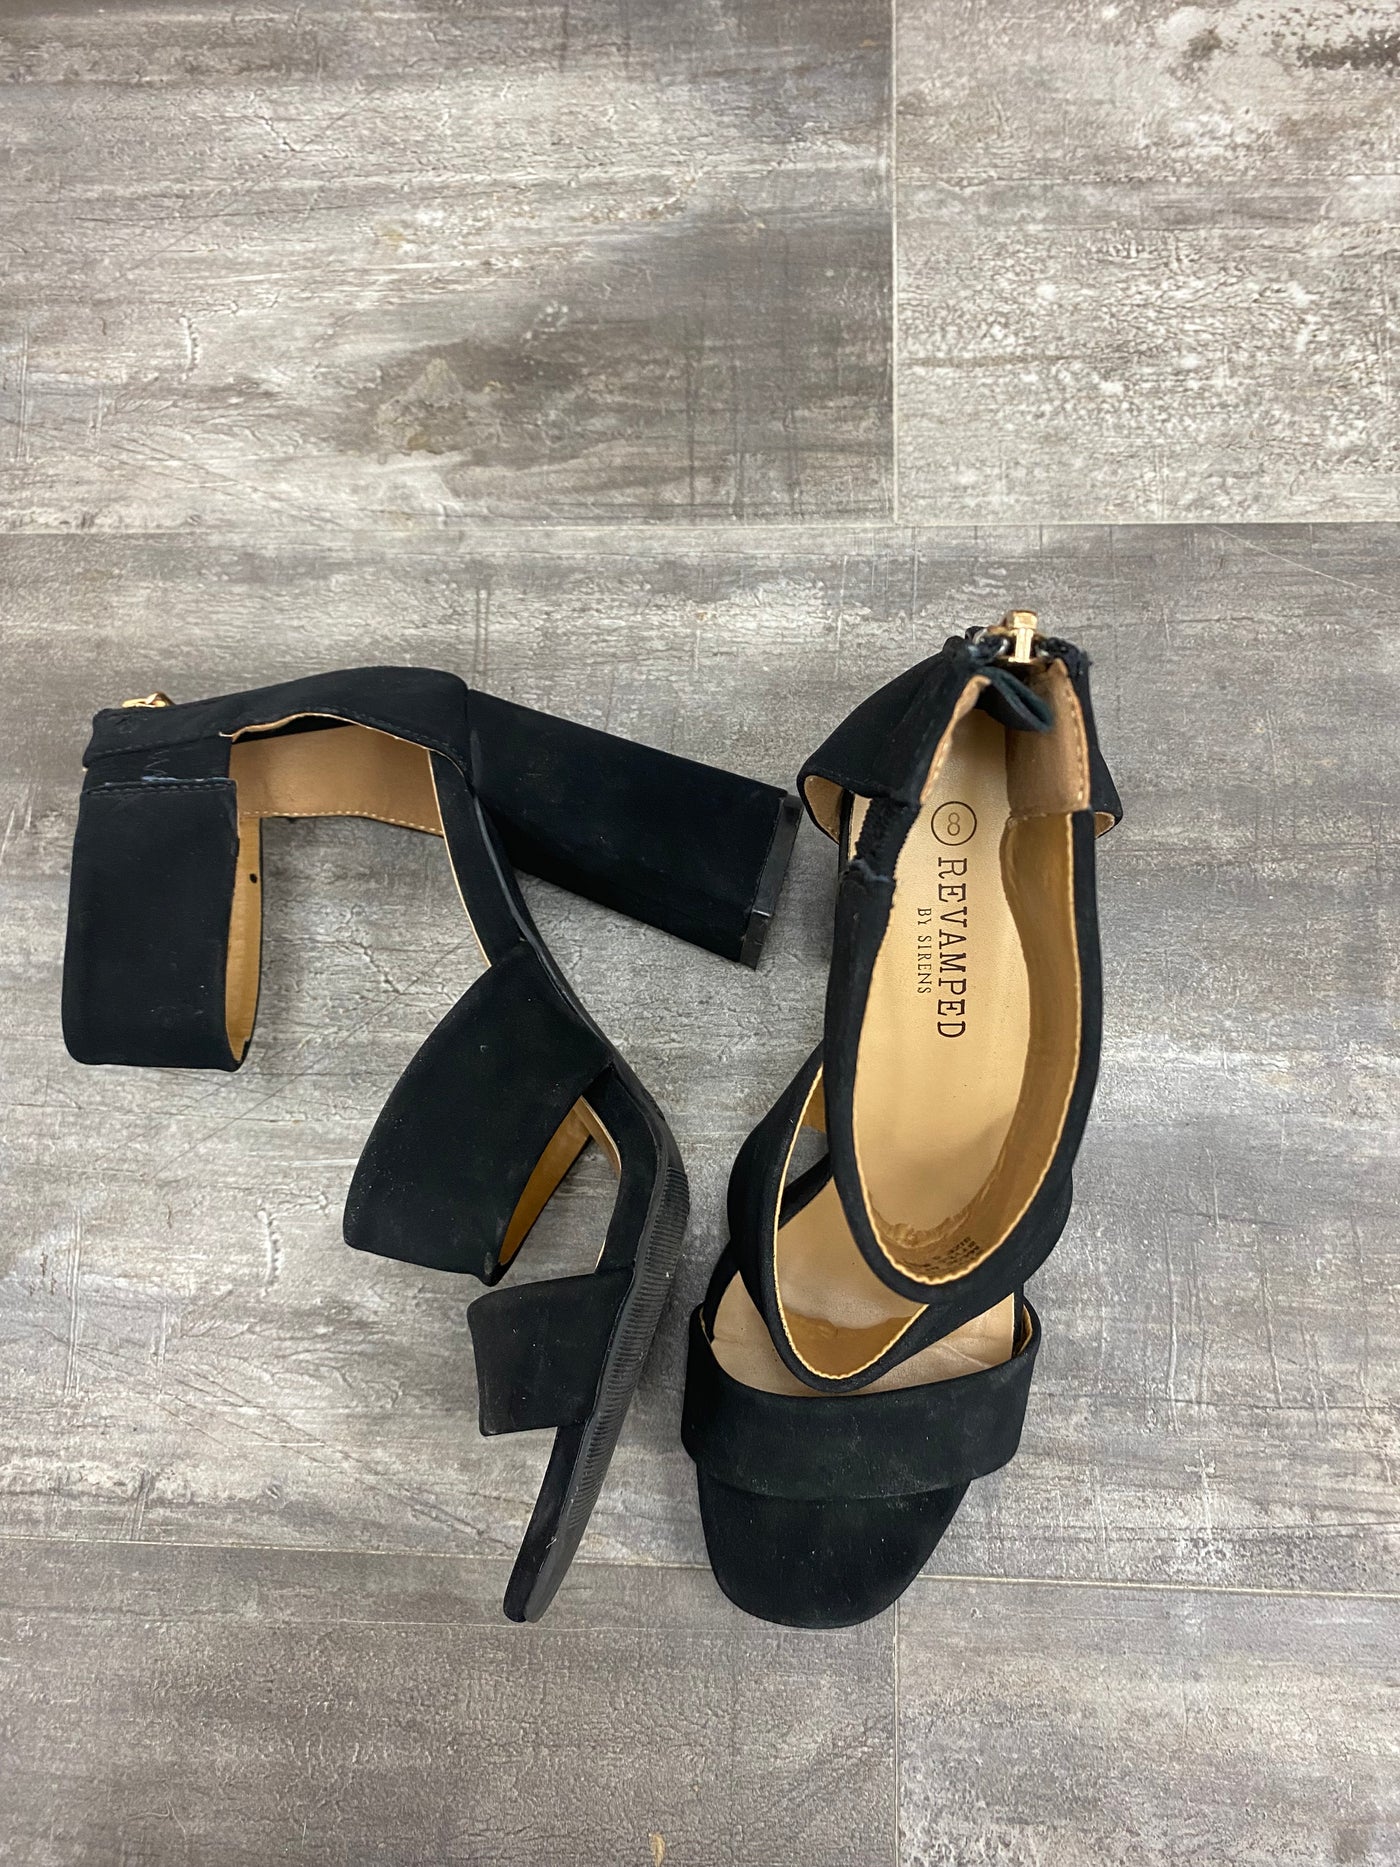 Revamped black high heels